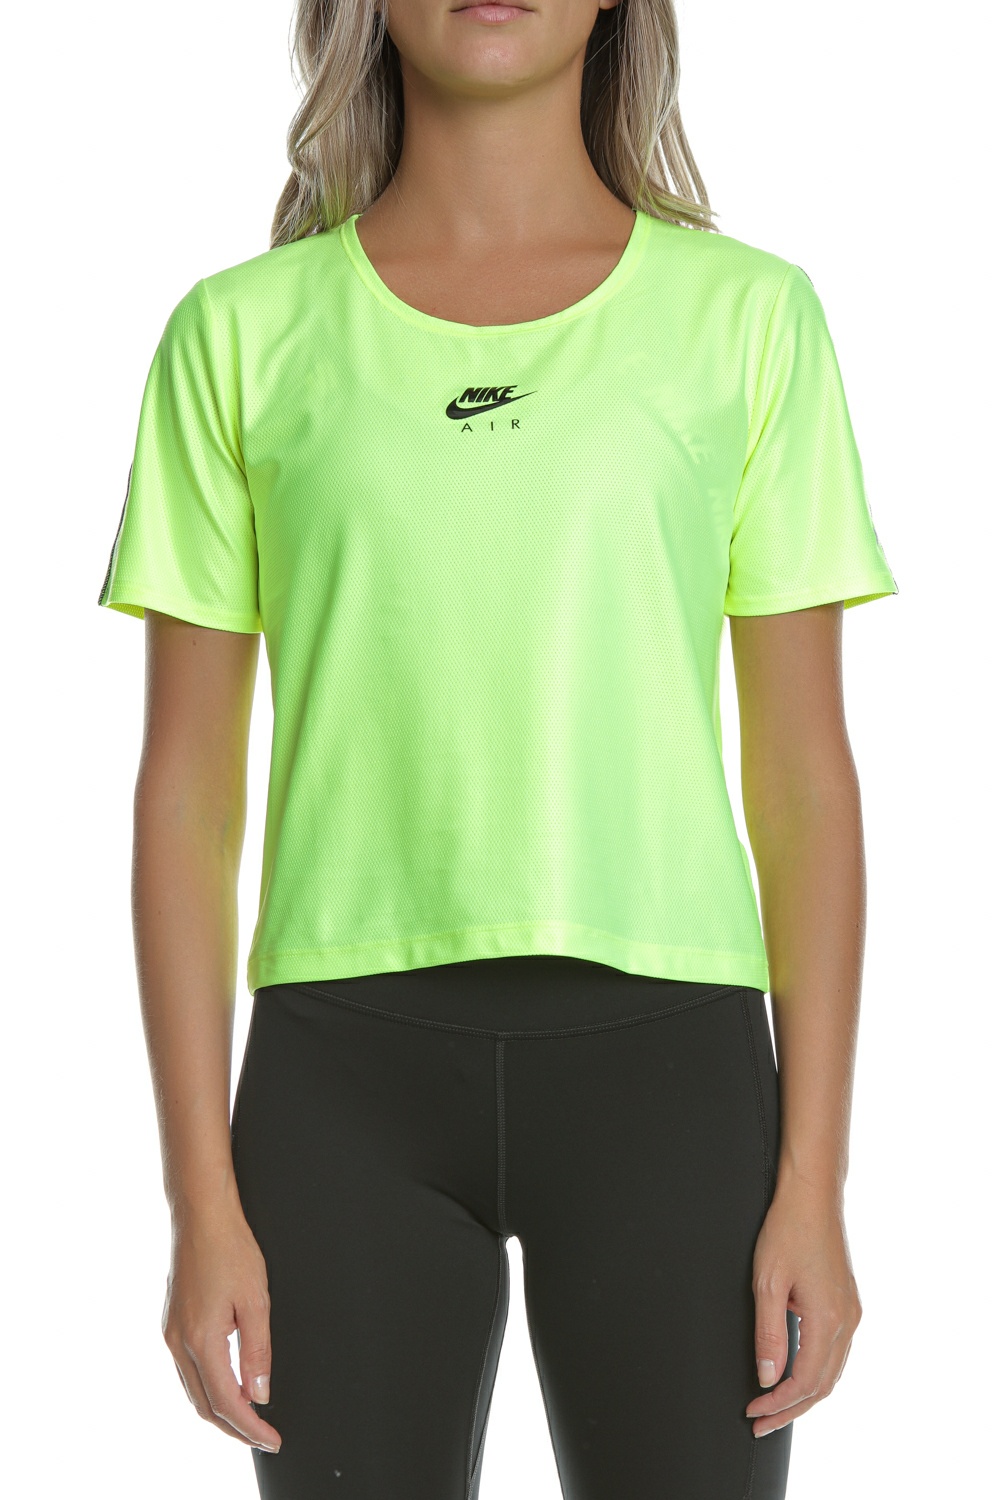 Γυναικεία/Ρούχα/Αθλητικά/T-shirt-Τοπ NIKE - Γυναικείο αθλητικό t-shirt ΝΙΚΕ AIR TOP λαχανί